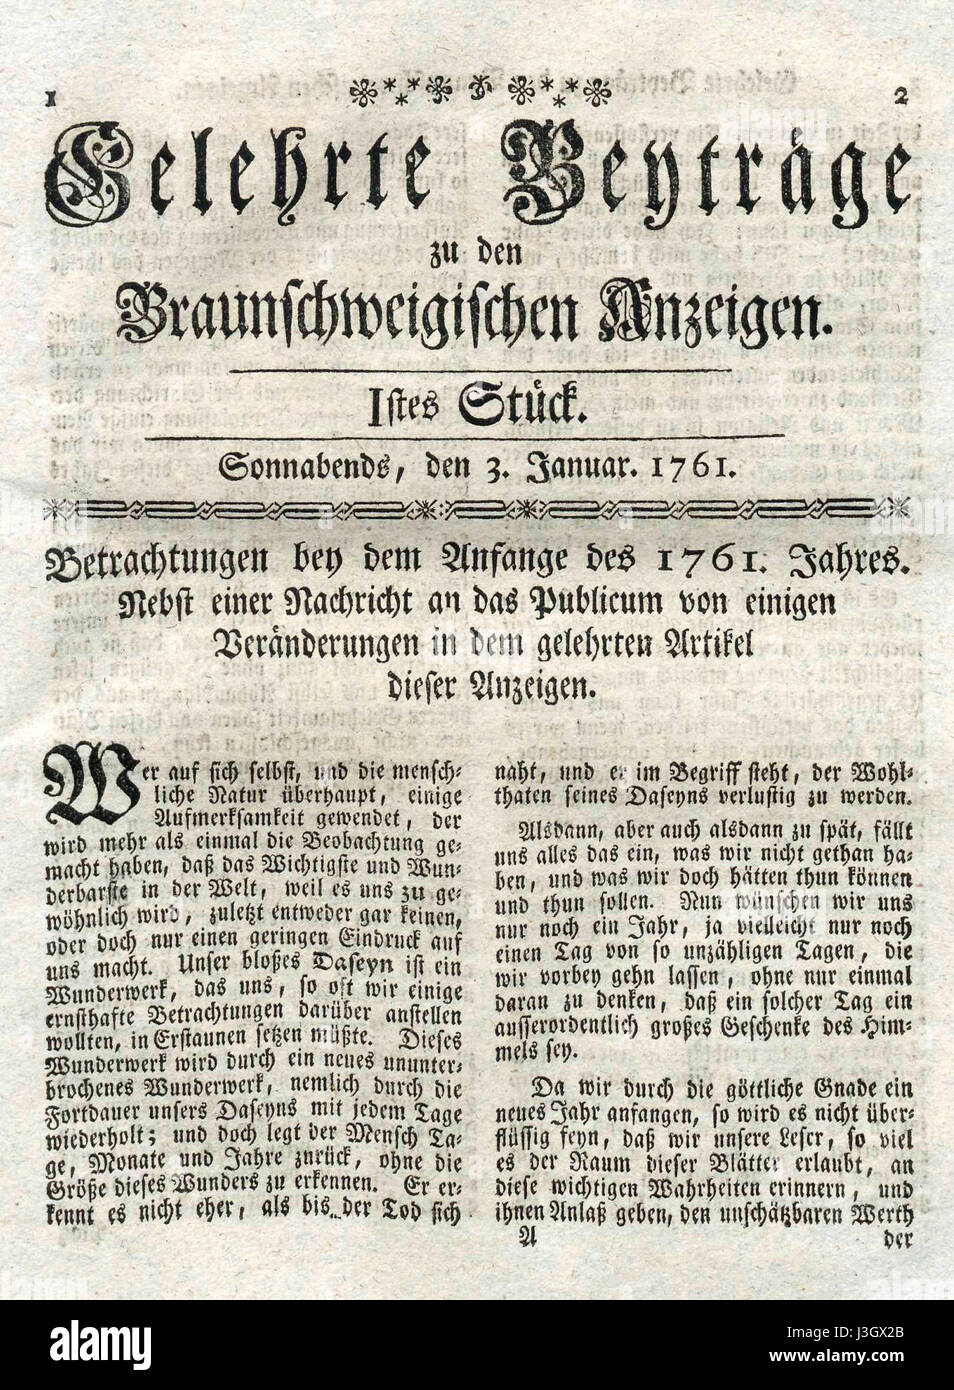 Gelehrte Beitraege zu den Braunschweigischen Anzeigen Nr. 1 1761 Foto Stock